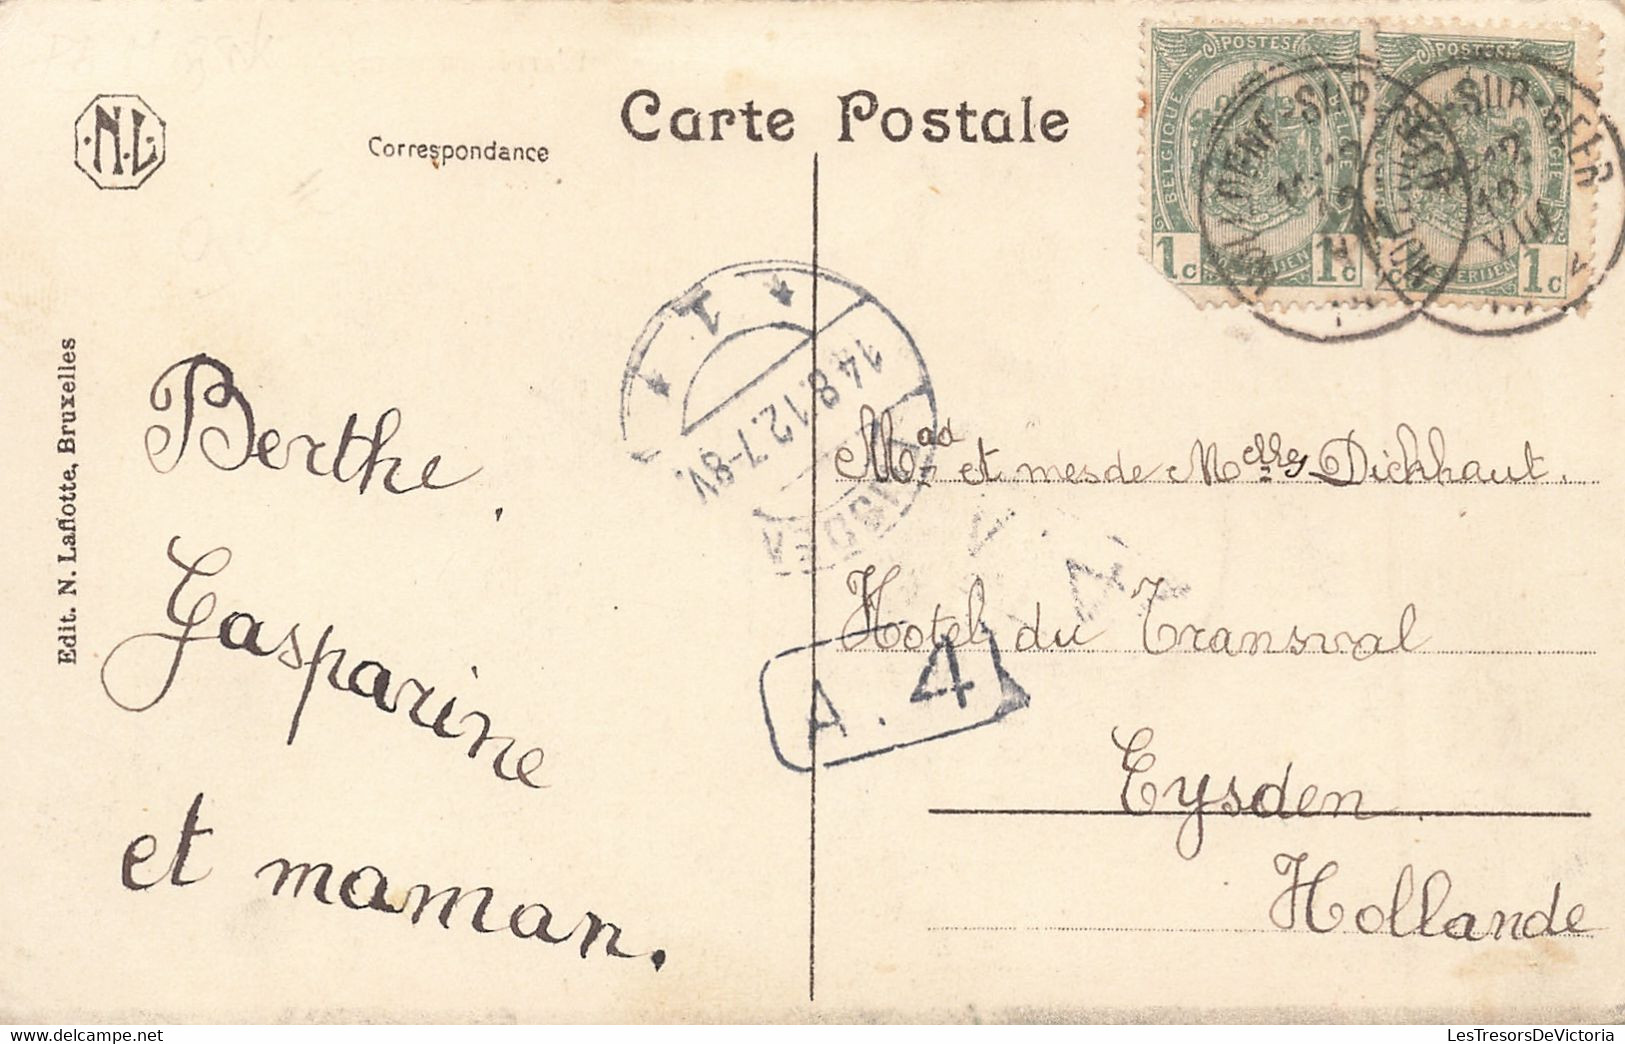 CPA - Belgique - Geer L'Arrêt Du Tram - Edit. N. Laflotte - Oblitéré Hollogne Sur Geer 1919 - Animé - Tram - - Geer